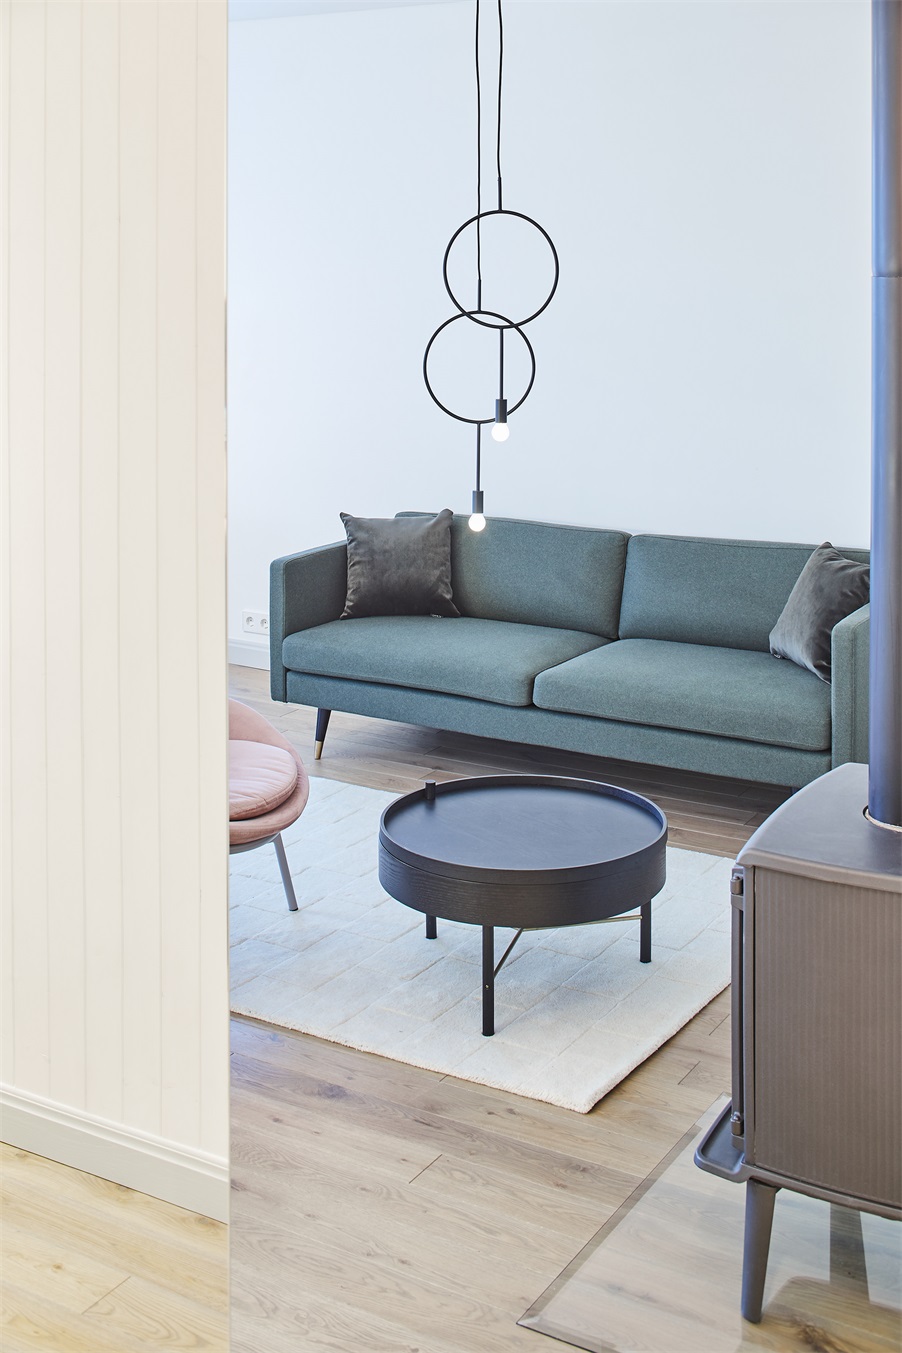 客厅背景墙采用白墙铺陈,配以墨绿色沙发,空间简单明亮,协调统一